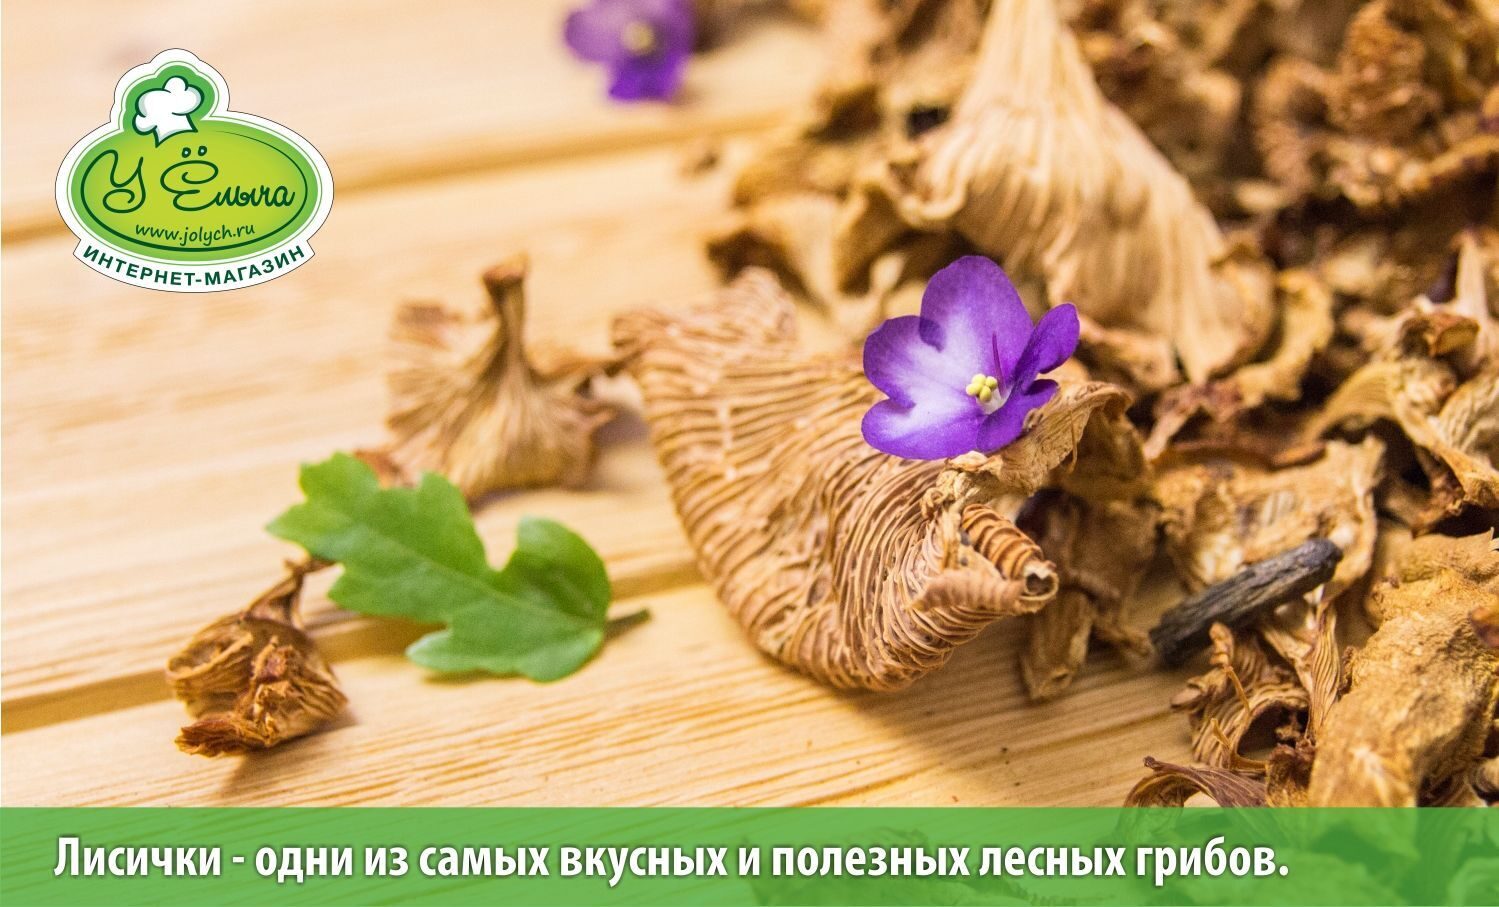 Лисички Ц один из самых полезных грибов средней полосы России